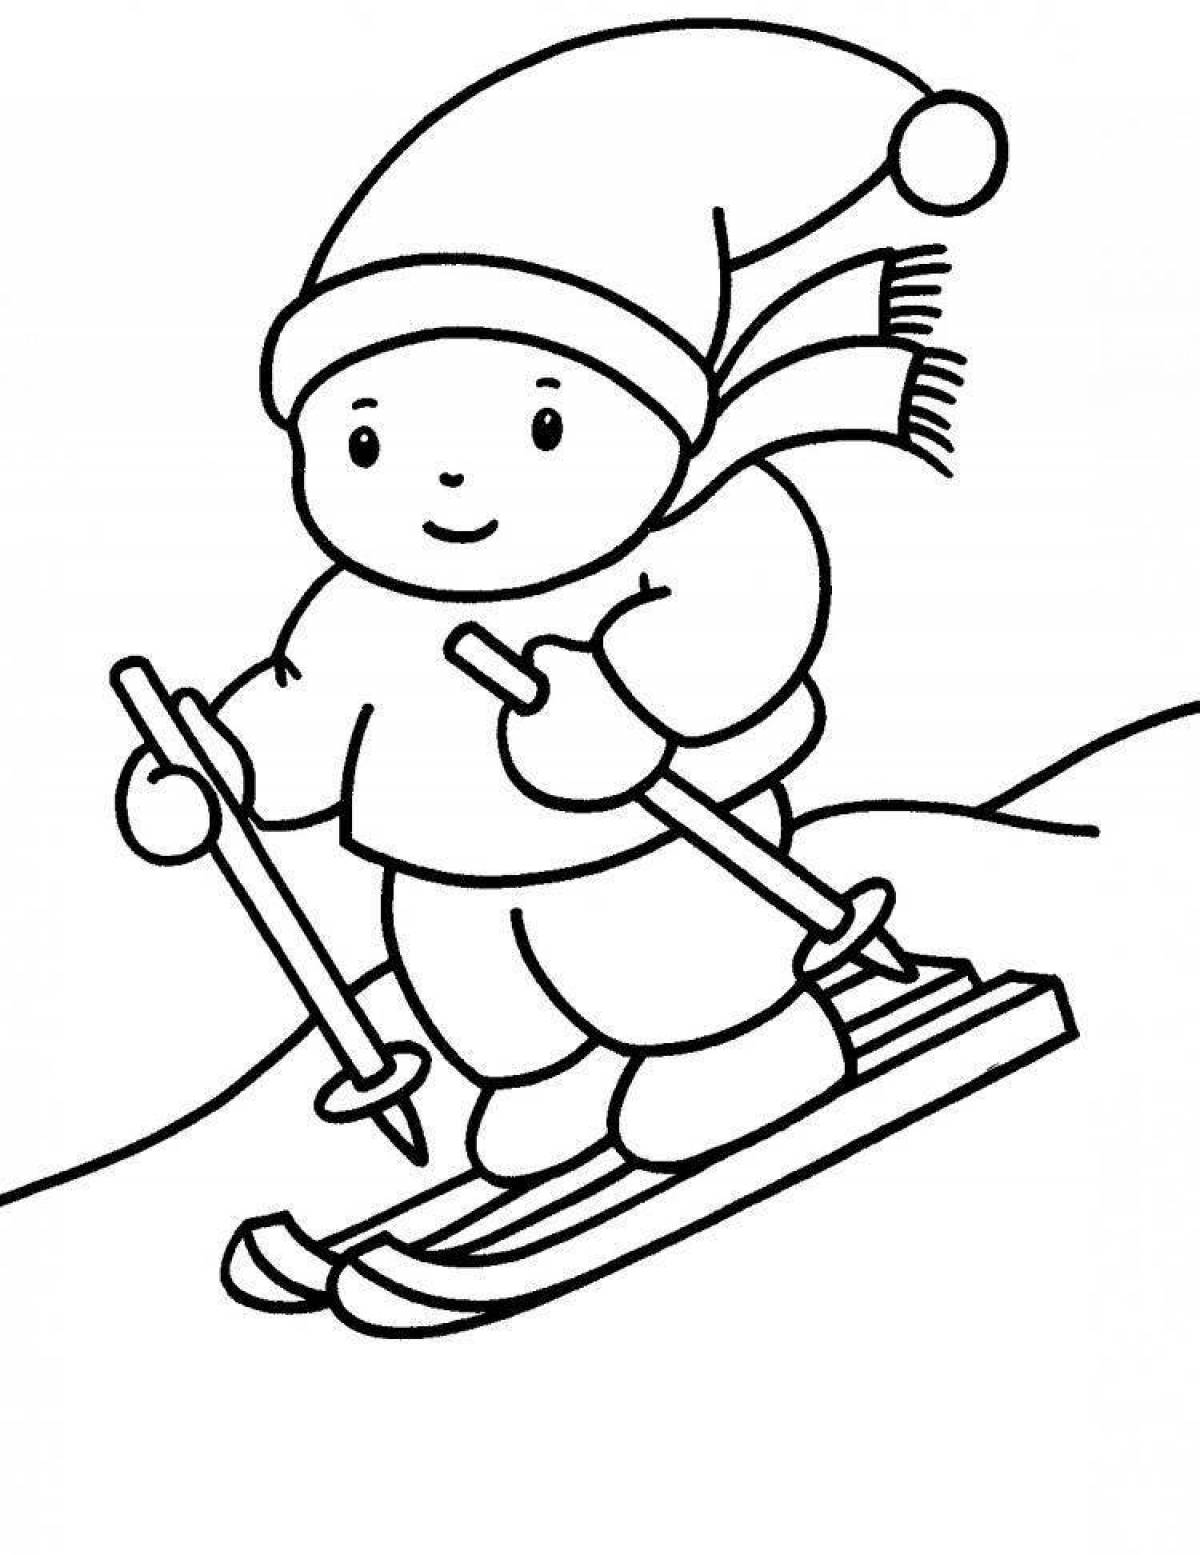 Веселая картинка с зимними видами спорта для детей в детском саду